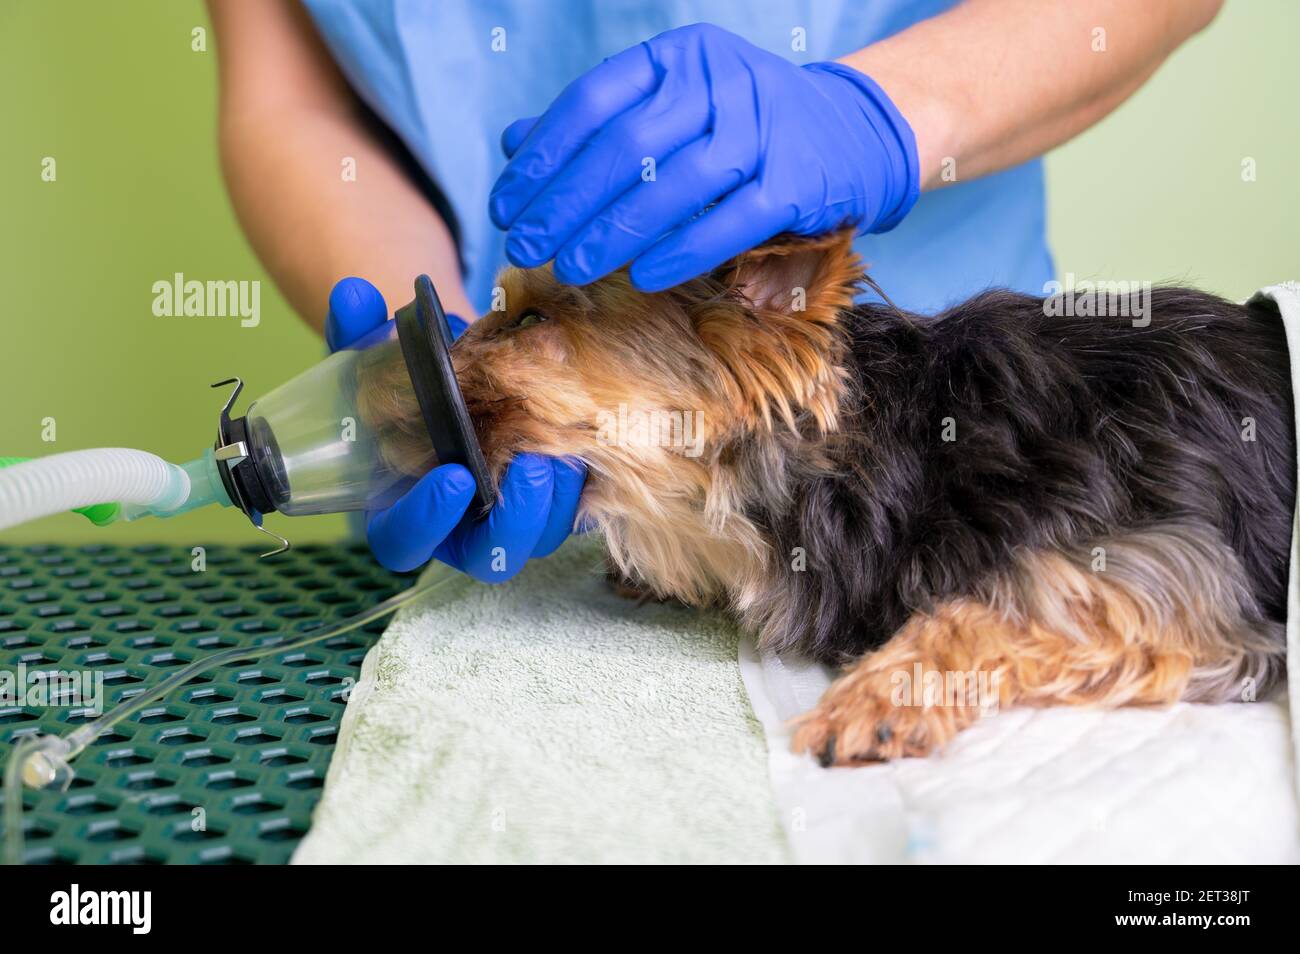 Tecnica di preossigenazione nel cane con maschera di ossigeno. Veterinario medico prepara il cane per l'anestesia. Foto di alta qualità Foto Stock